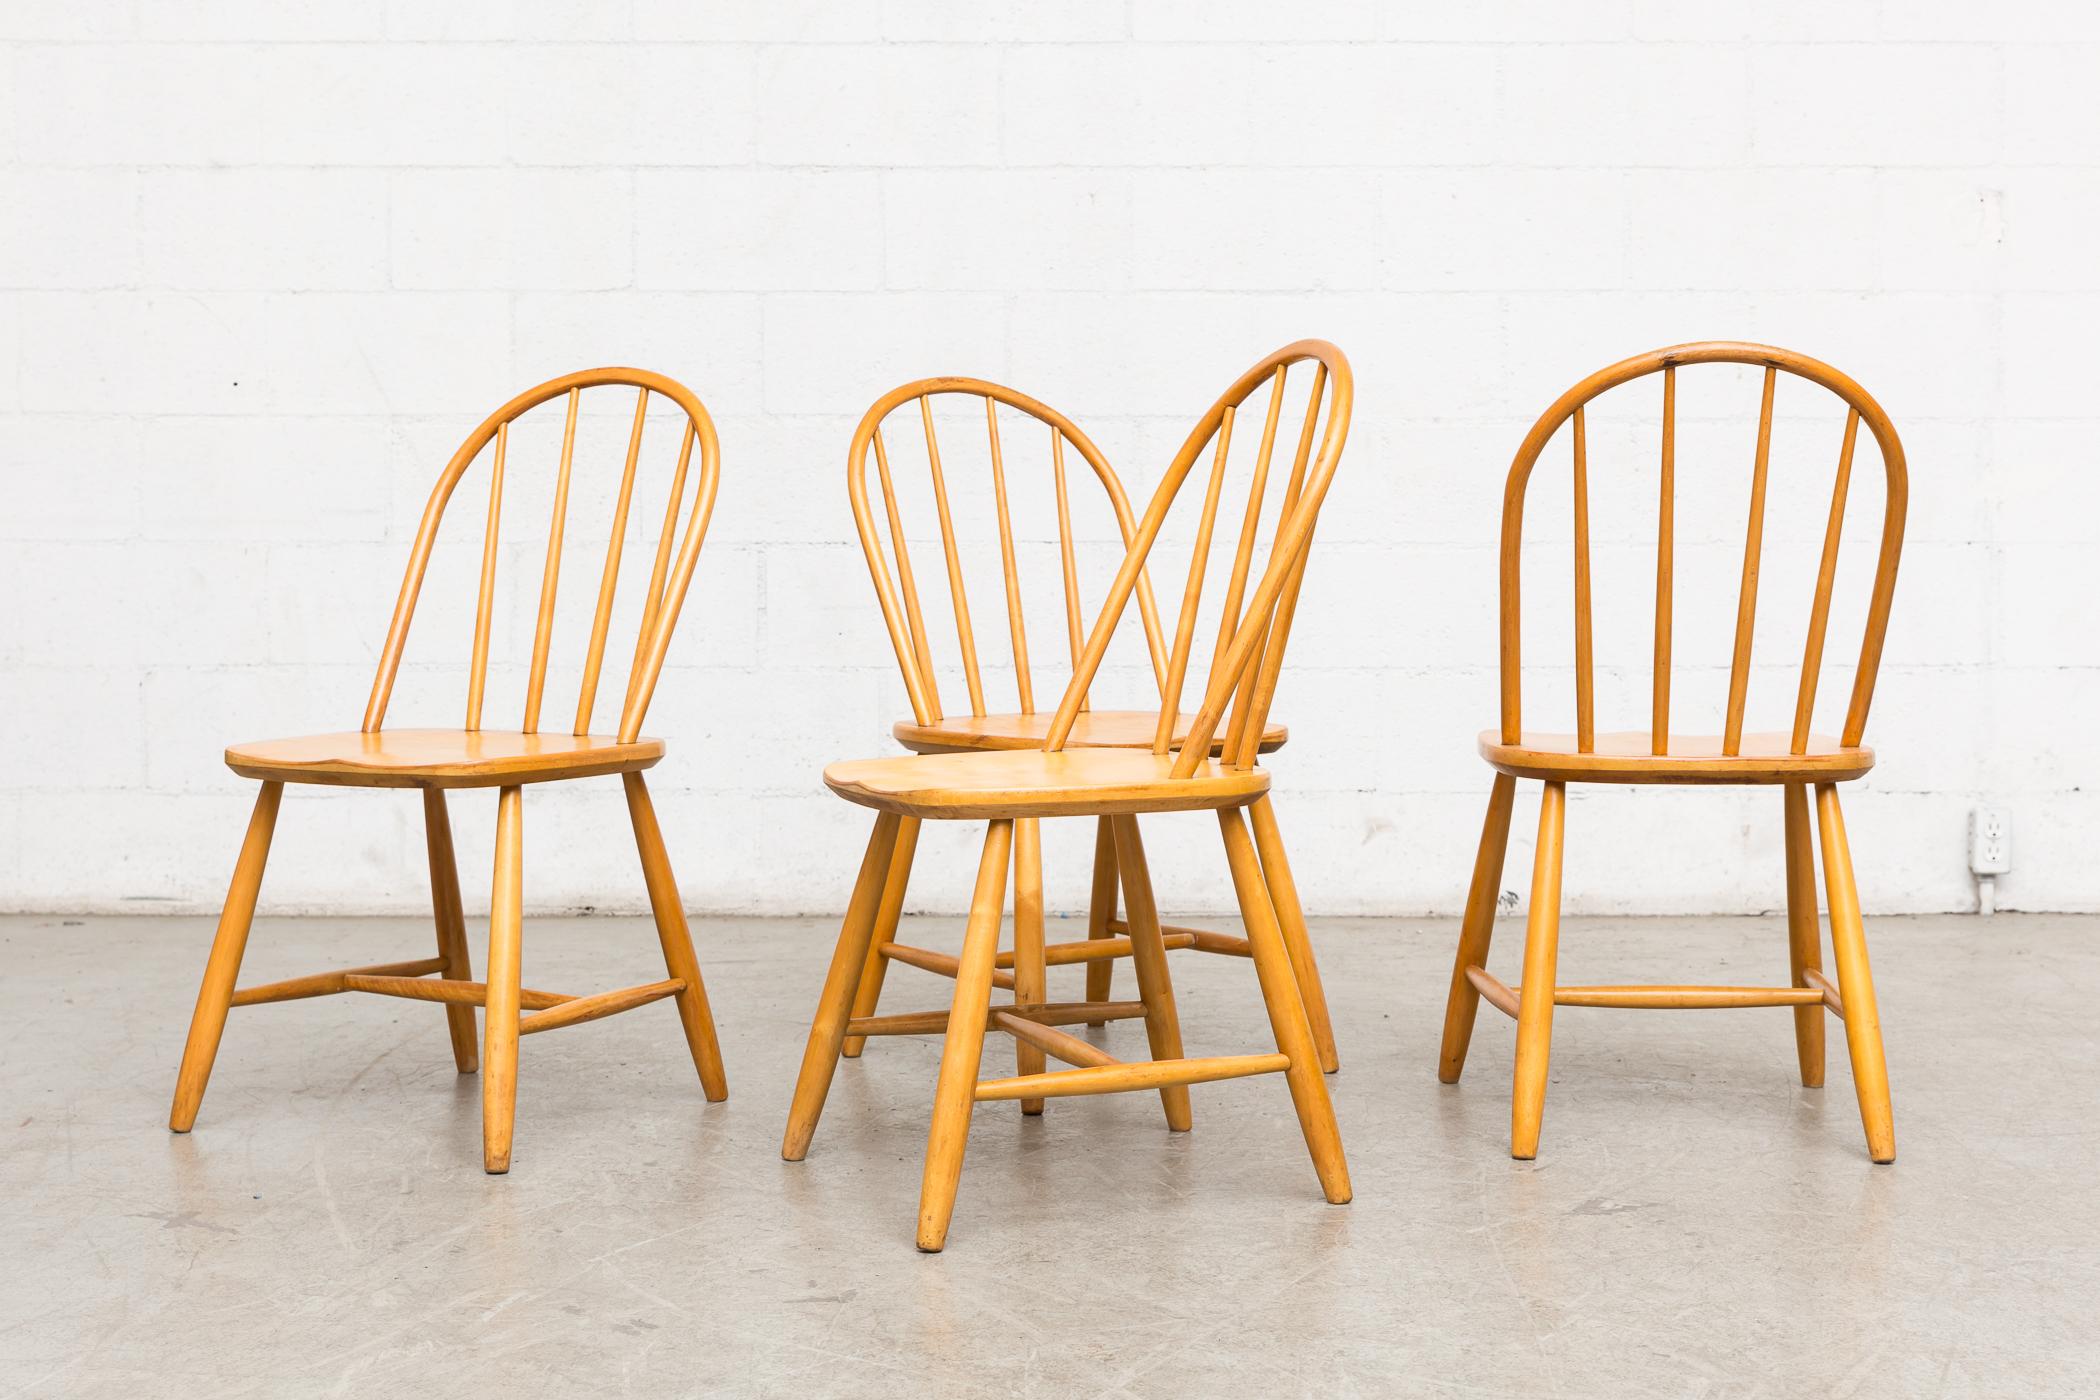 Ensemble de 4 chaises à dossier en fuseau naturel d'inspiration Condit. Légèrement retouchées, hauteur d'assise un peu basse, sinon en bon état naturel. Le prix est fixé pour un ensemble. D'autres chaises similaires sont disponibles et listées